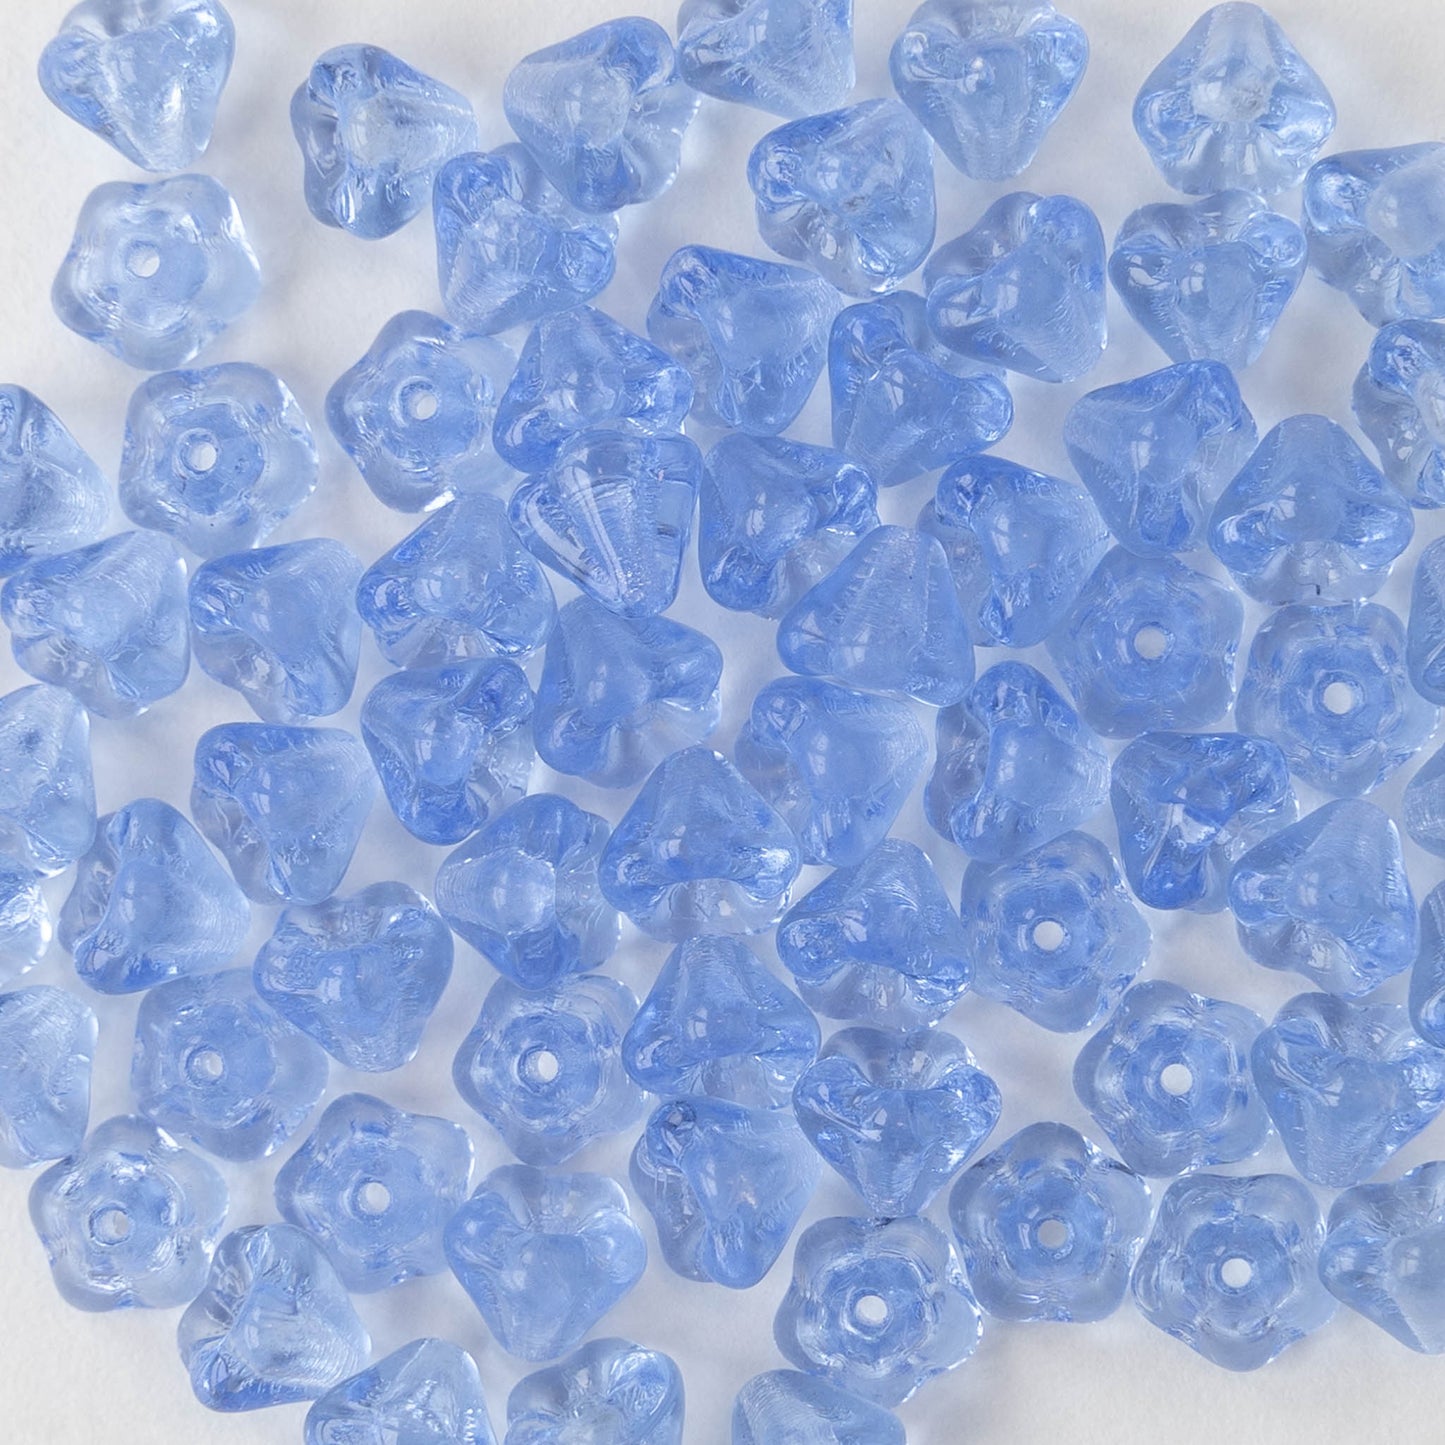 4x6mm Glass Flower Beads - Lt. Sapphire Blue - 75